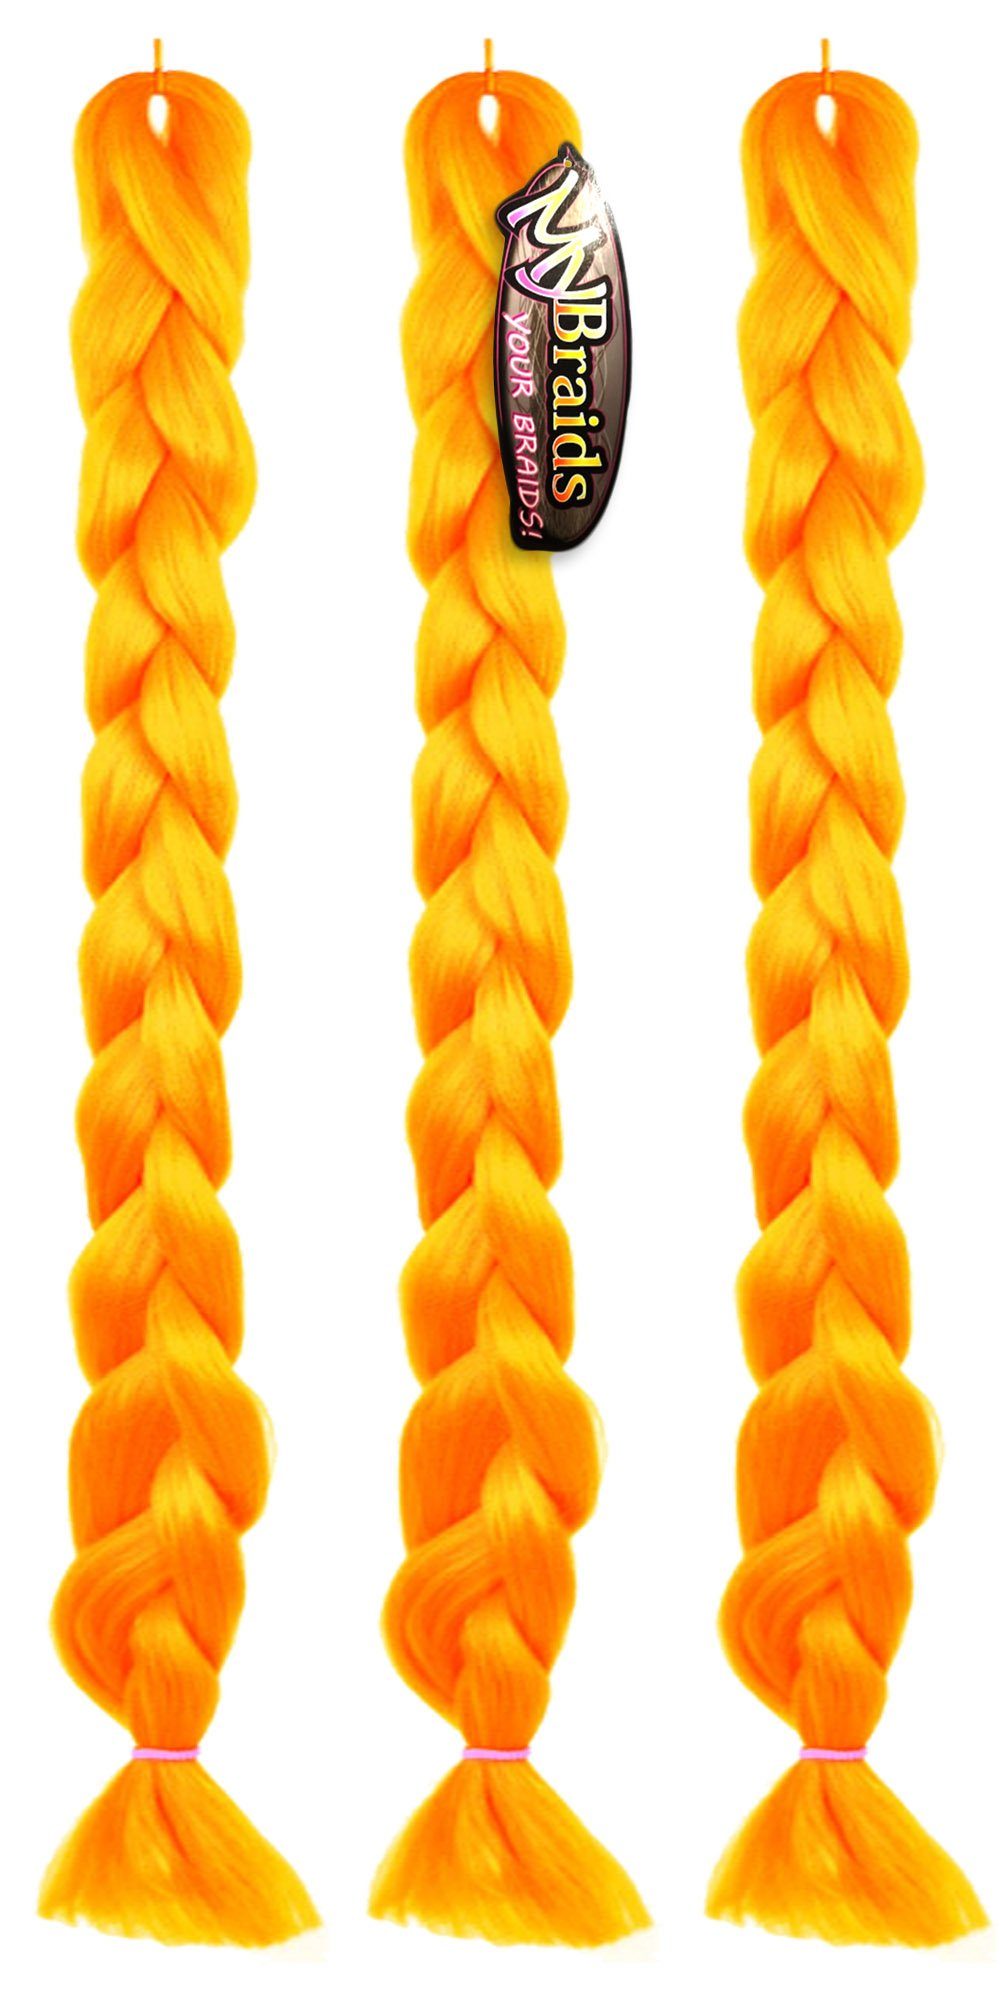 MyBraids YOUR BRAIDS! Kunsthaar-Extension Premium Braids Flechthaar Zöpfe 1-farbig mit 2m Länge im 3er Pack 20-AY Orange